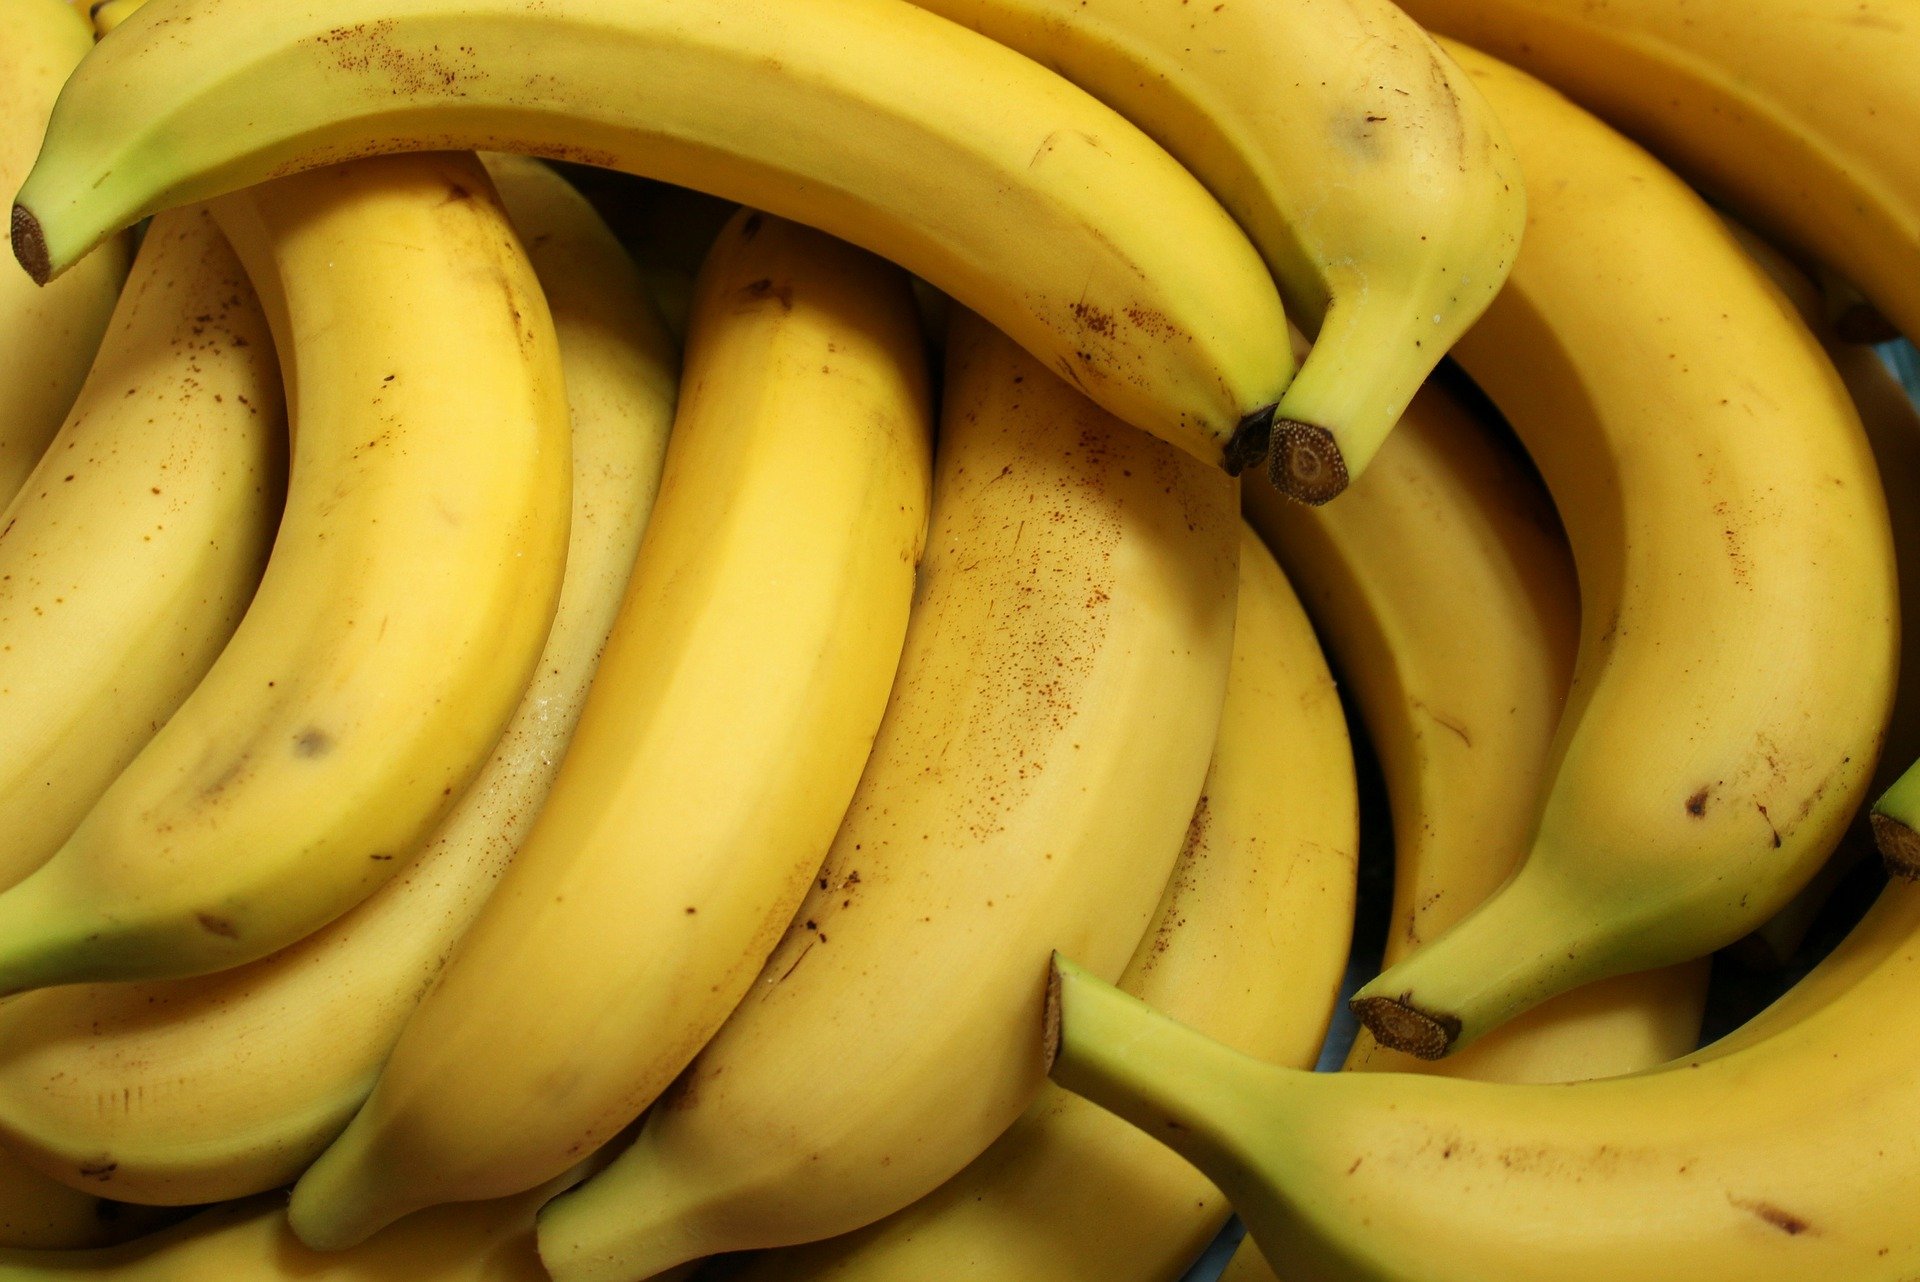 les fruits owoce quiz z francuskiego nauka języka zabawa dla maluszków przedszkole test wiedzy dzieci dwujęzyczne słówka słownictwo banan banane